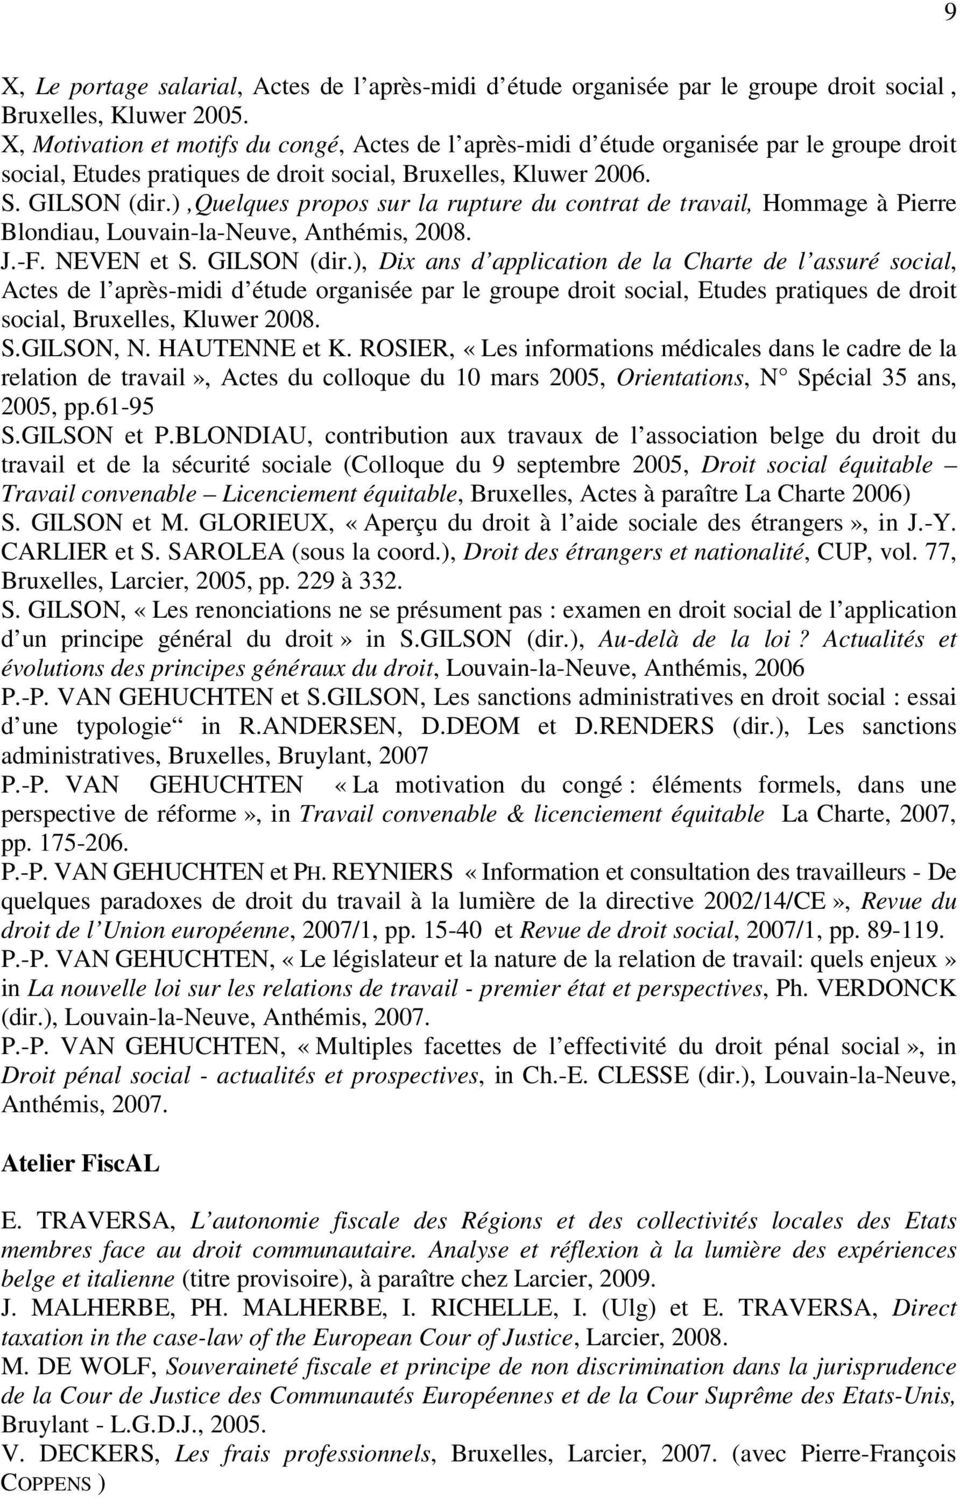 ),quelques propos sur la rupture du contrat de travail, Hommage à Pierre Blondiau, Louvain-la-Neuve, Anthémis, 2008. J.-F. NEVEN et S. GILSON (dir.